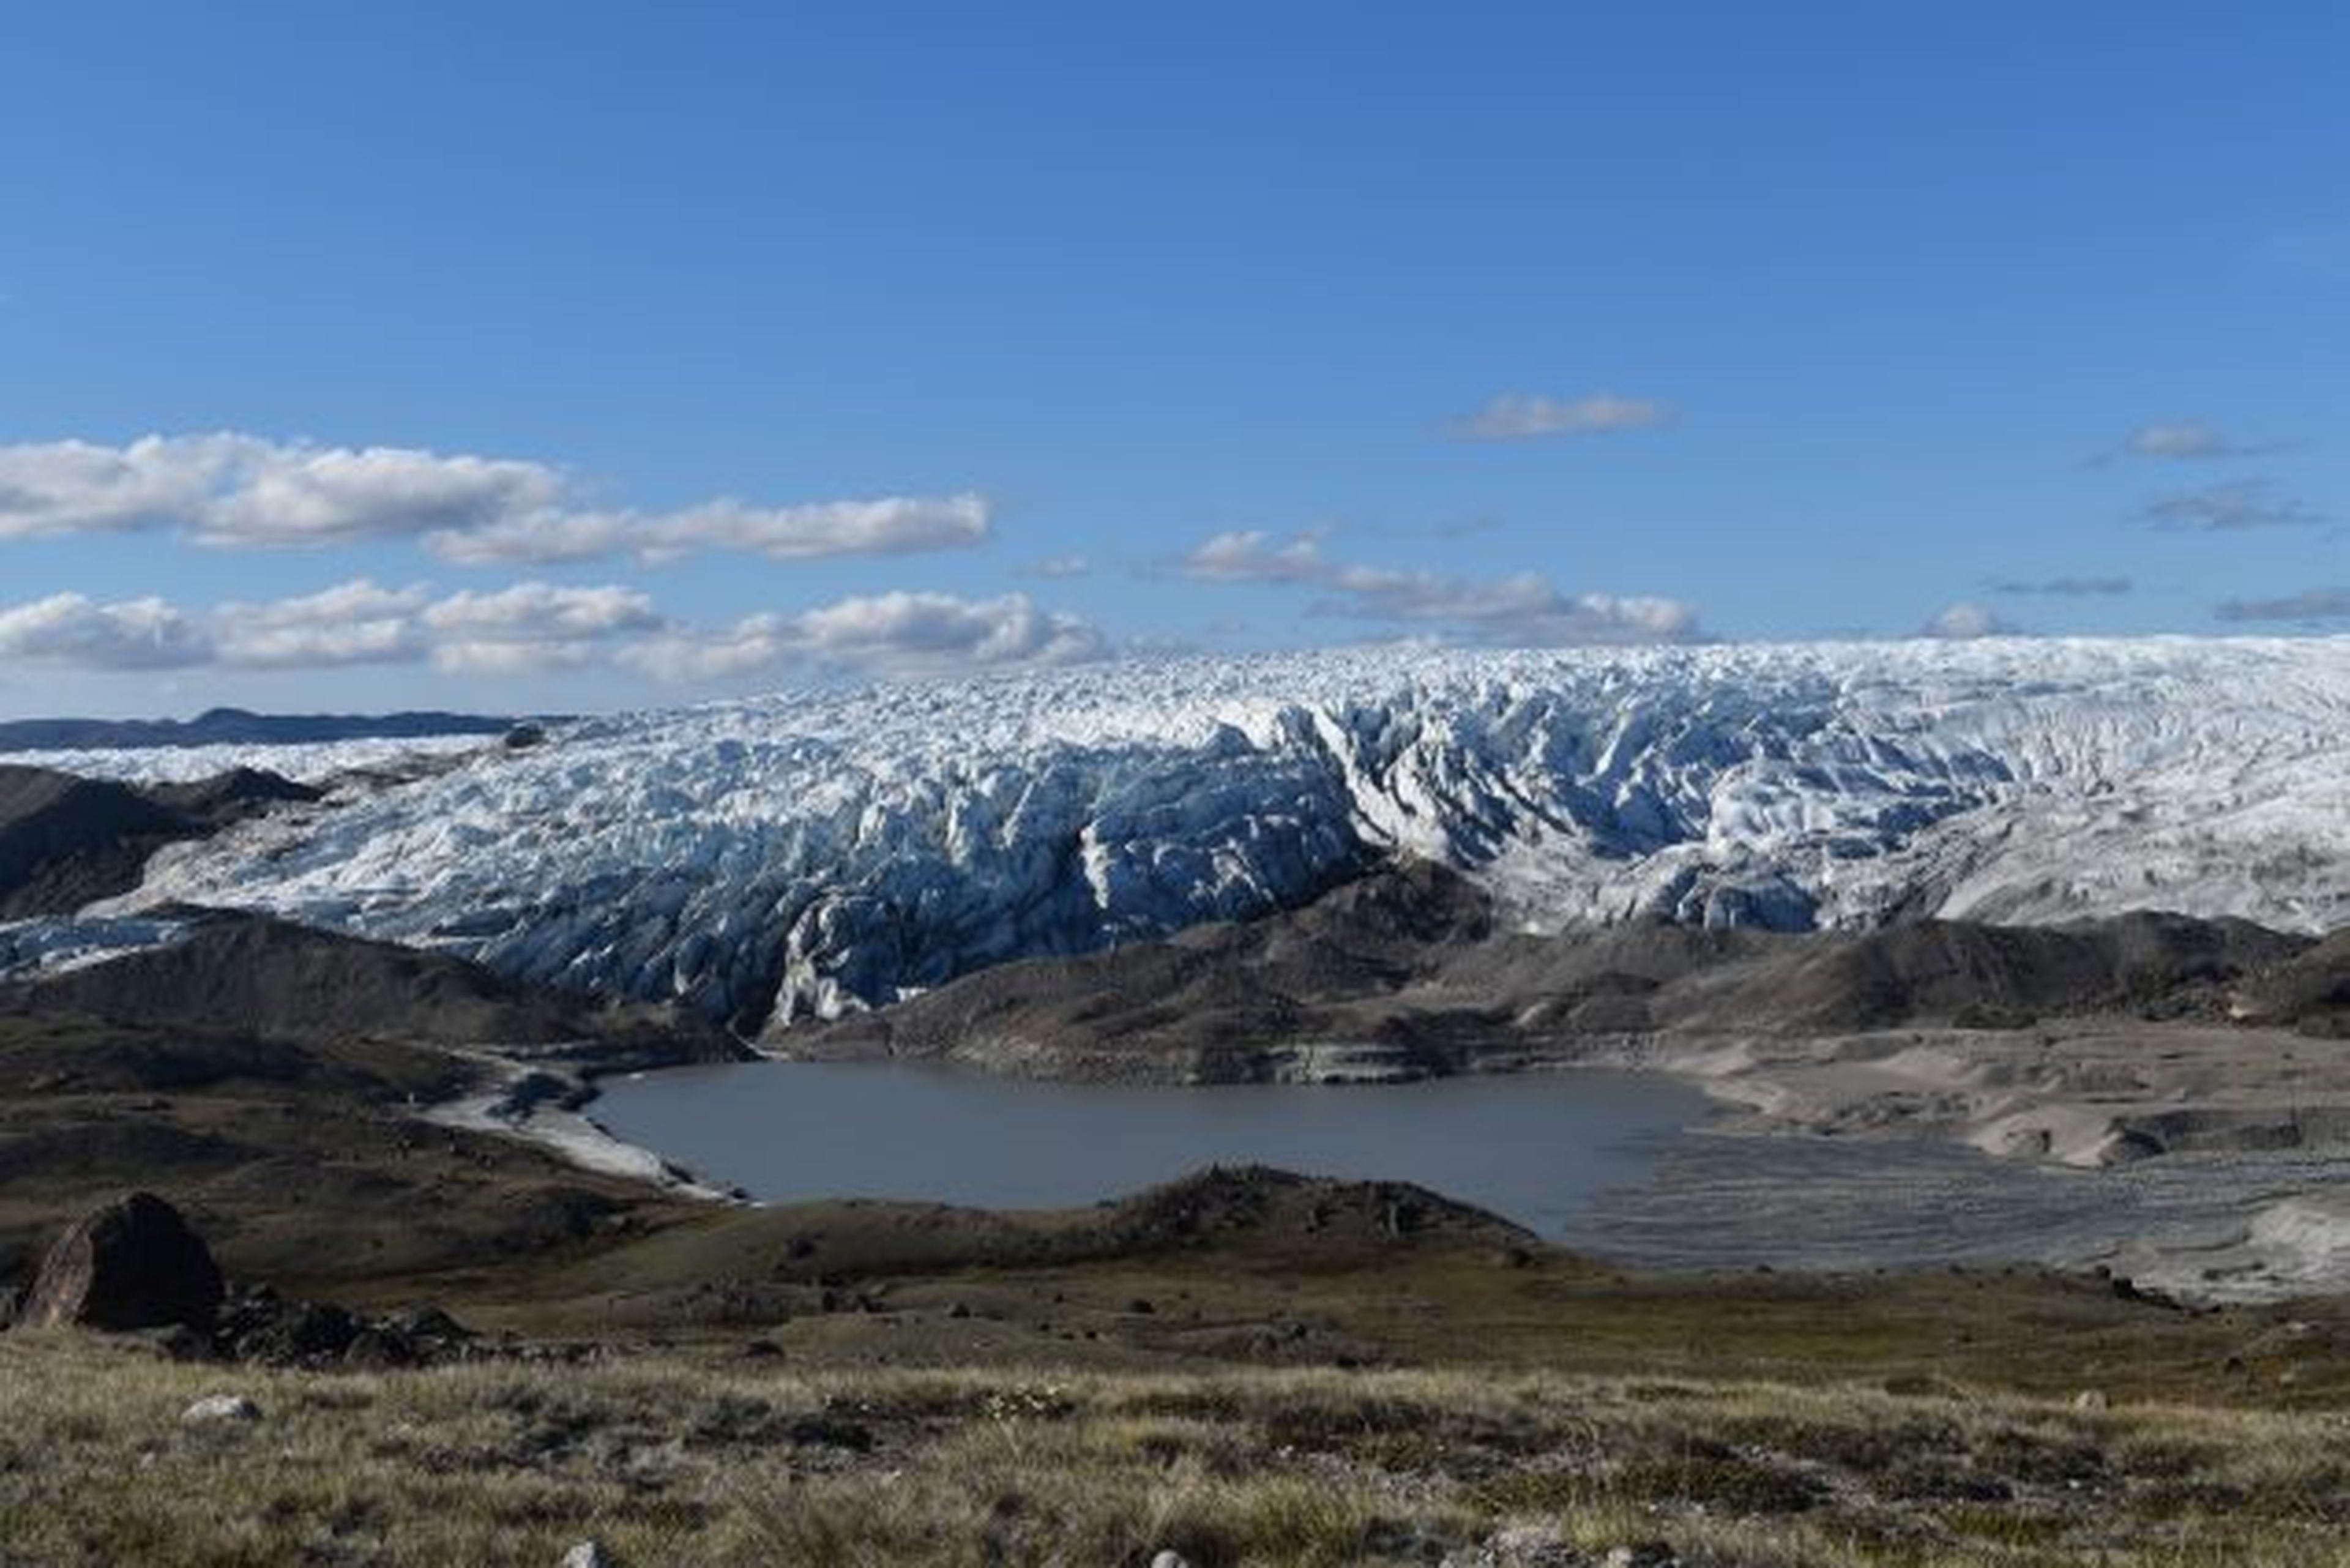 Lago cercano al casquete polar en Groenlandia que deja ver los sedimentos acumulados con el tiempo.